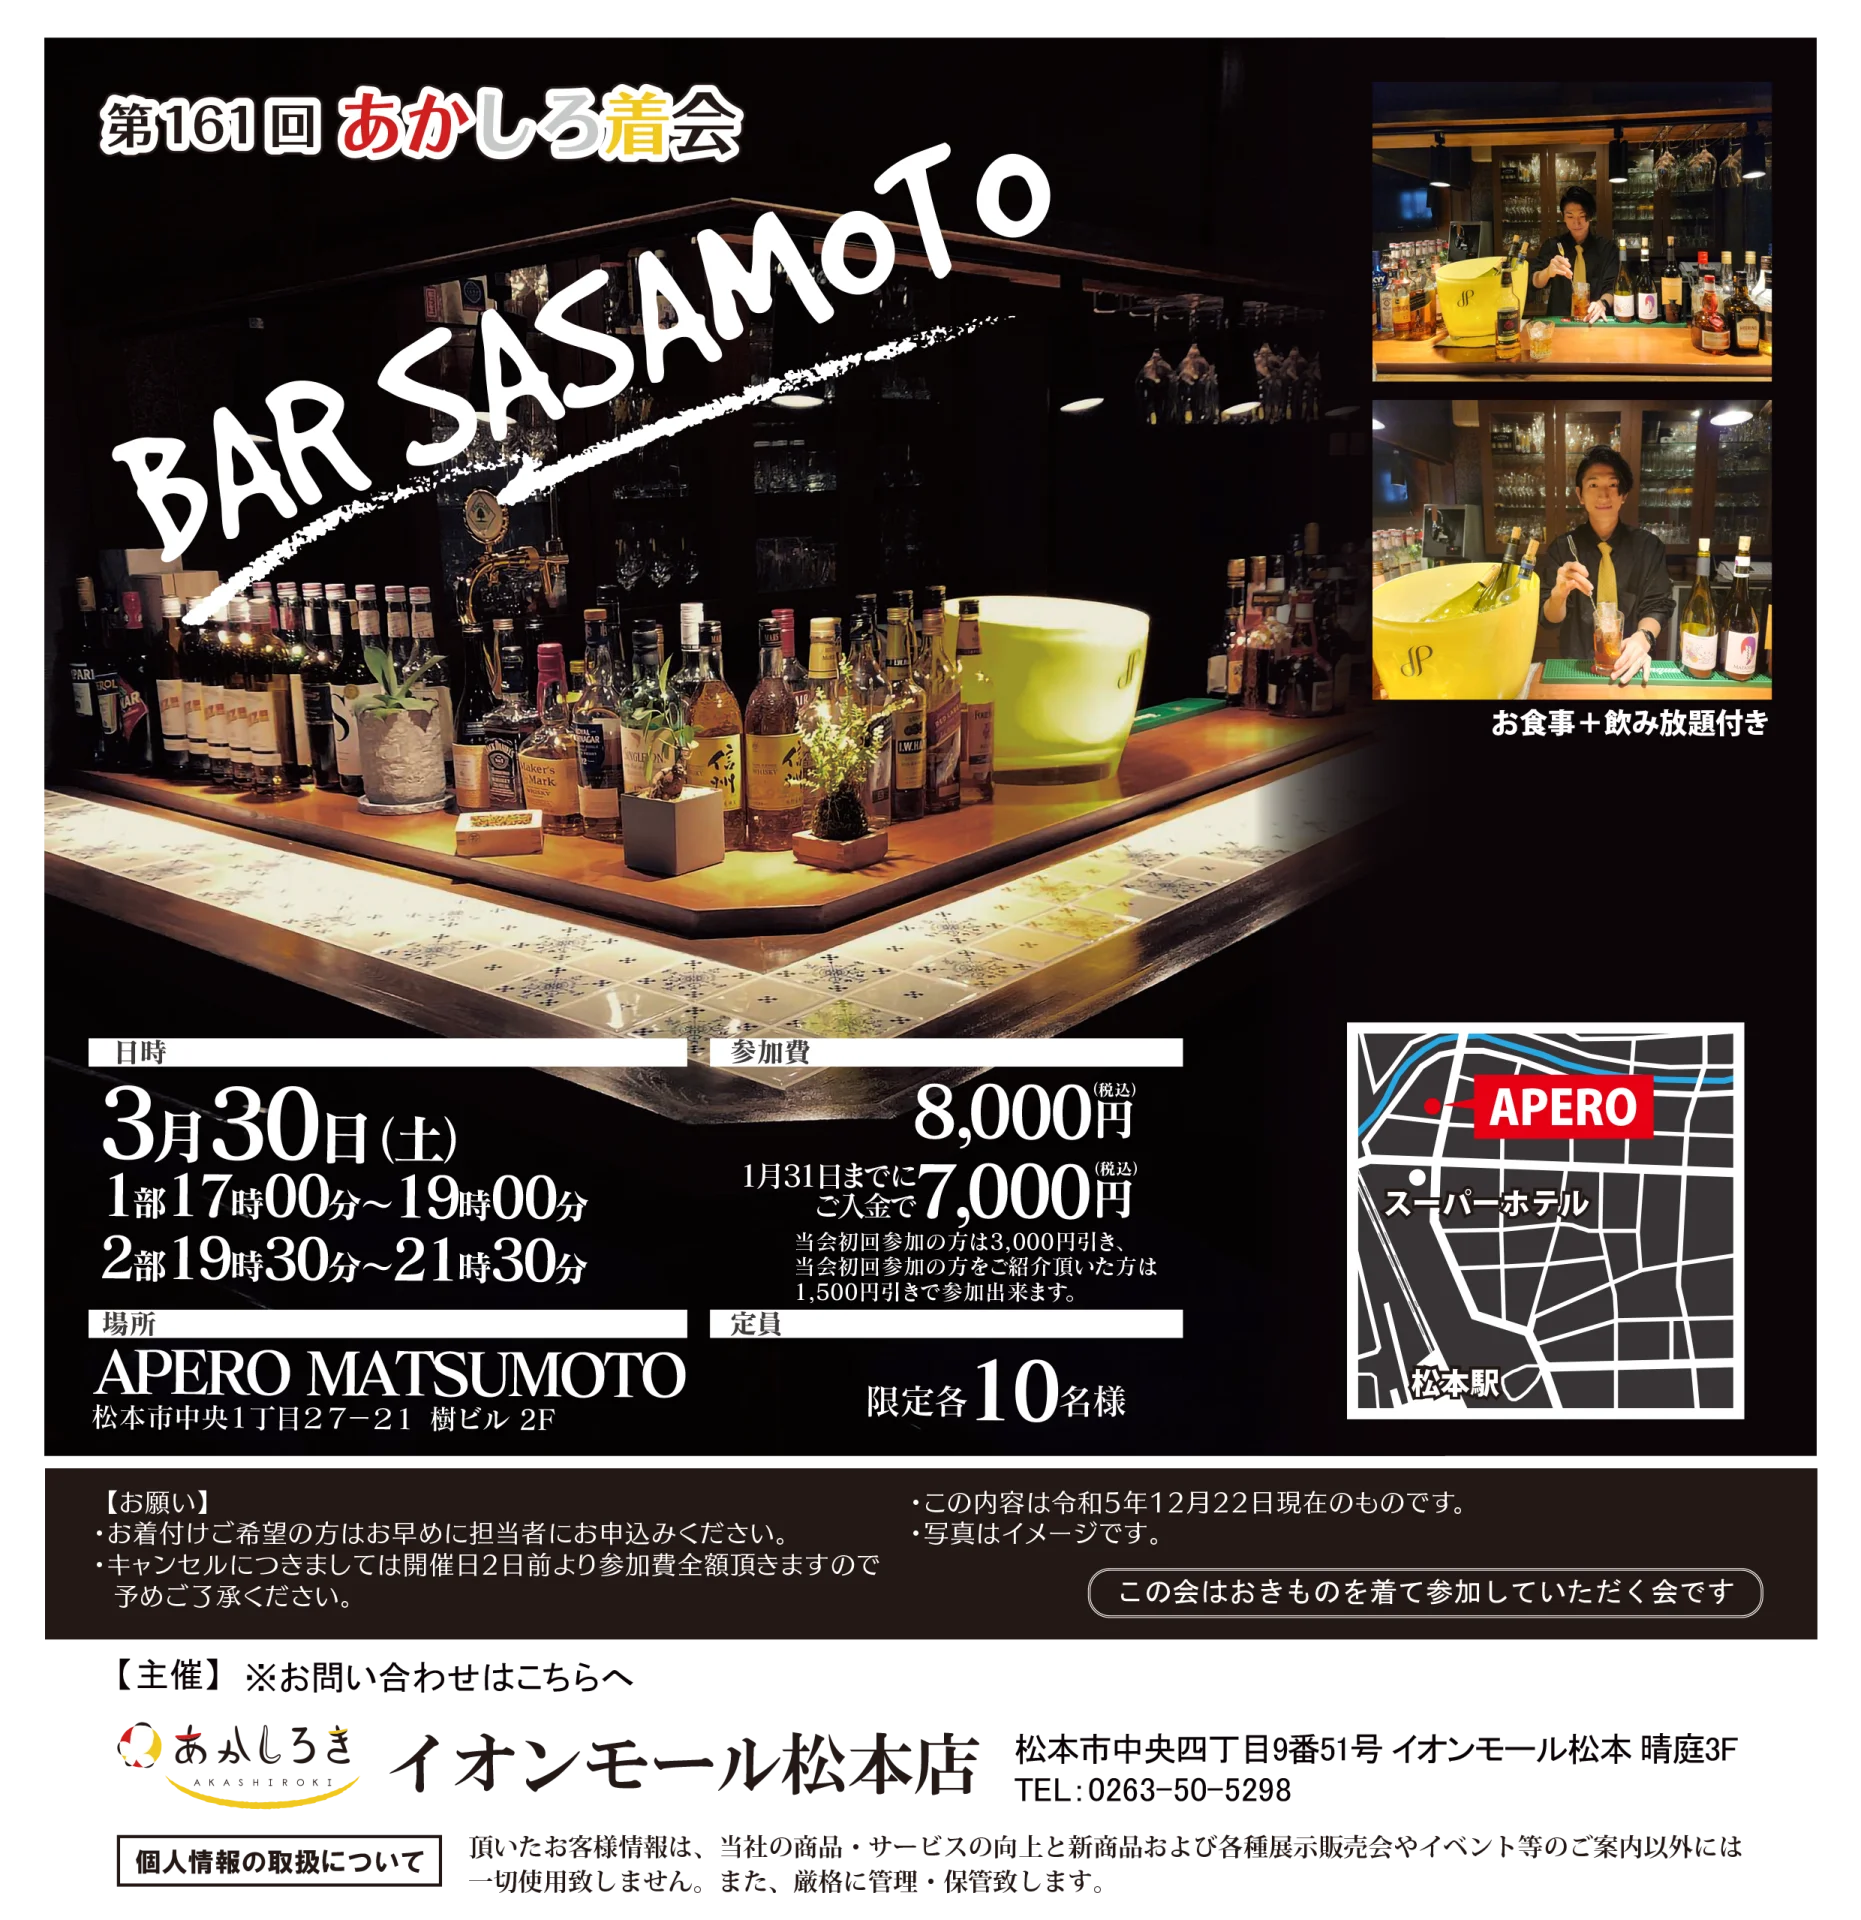 【3/30(土)】BAR SASAMOTO